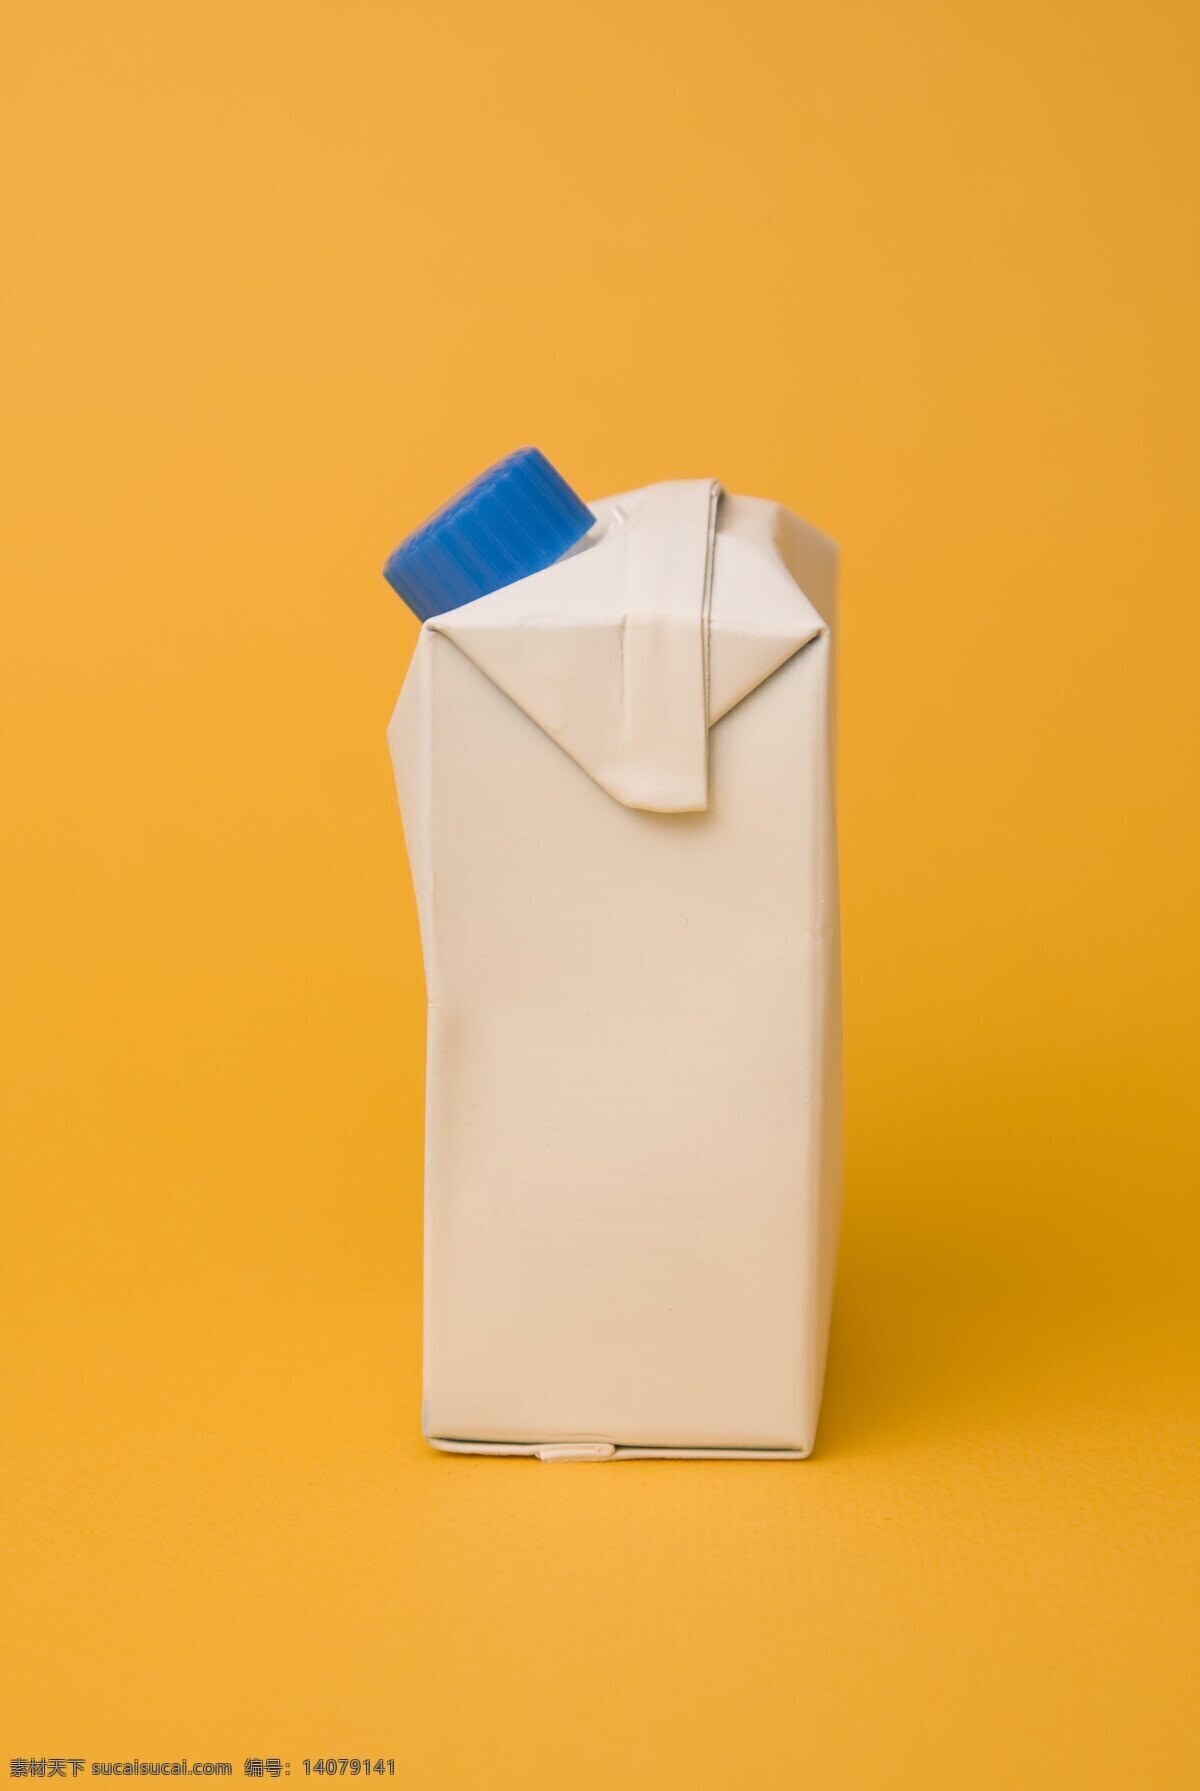 牛奶 包装盒 高清 牛奶盒 塑料 环保 盒子 瓶子 高清图片 生活素材 生活百科